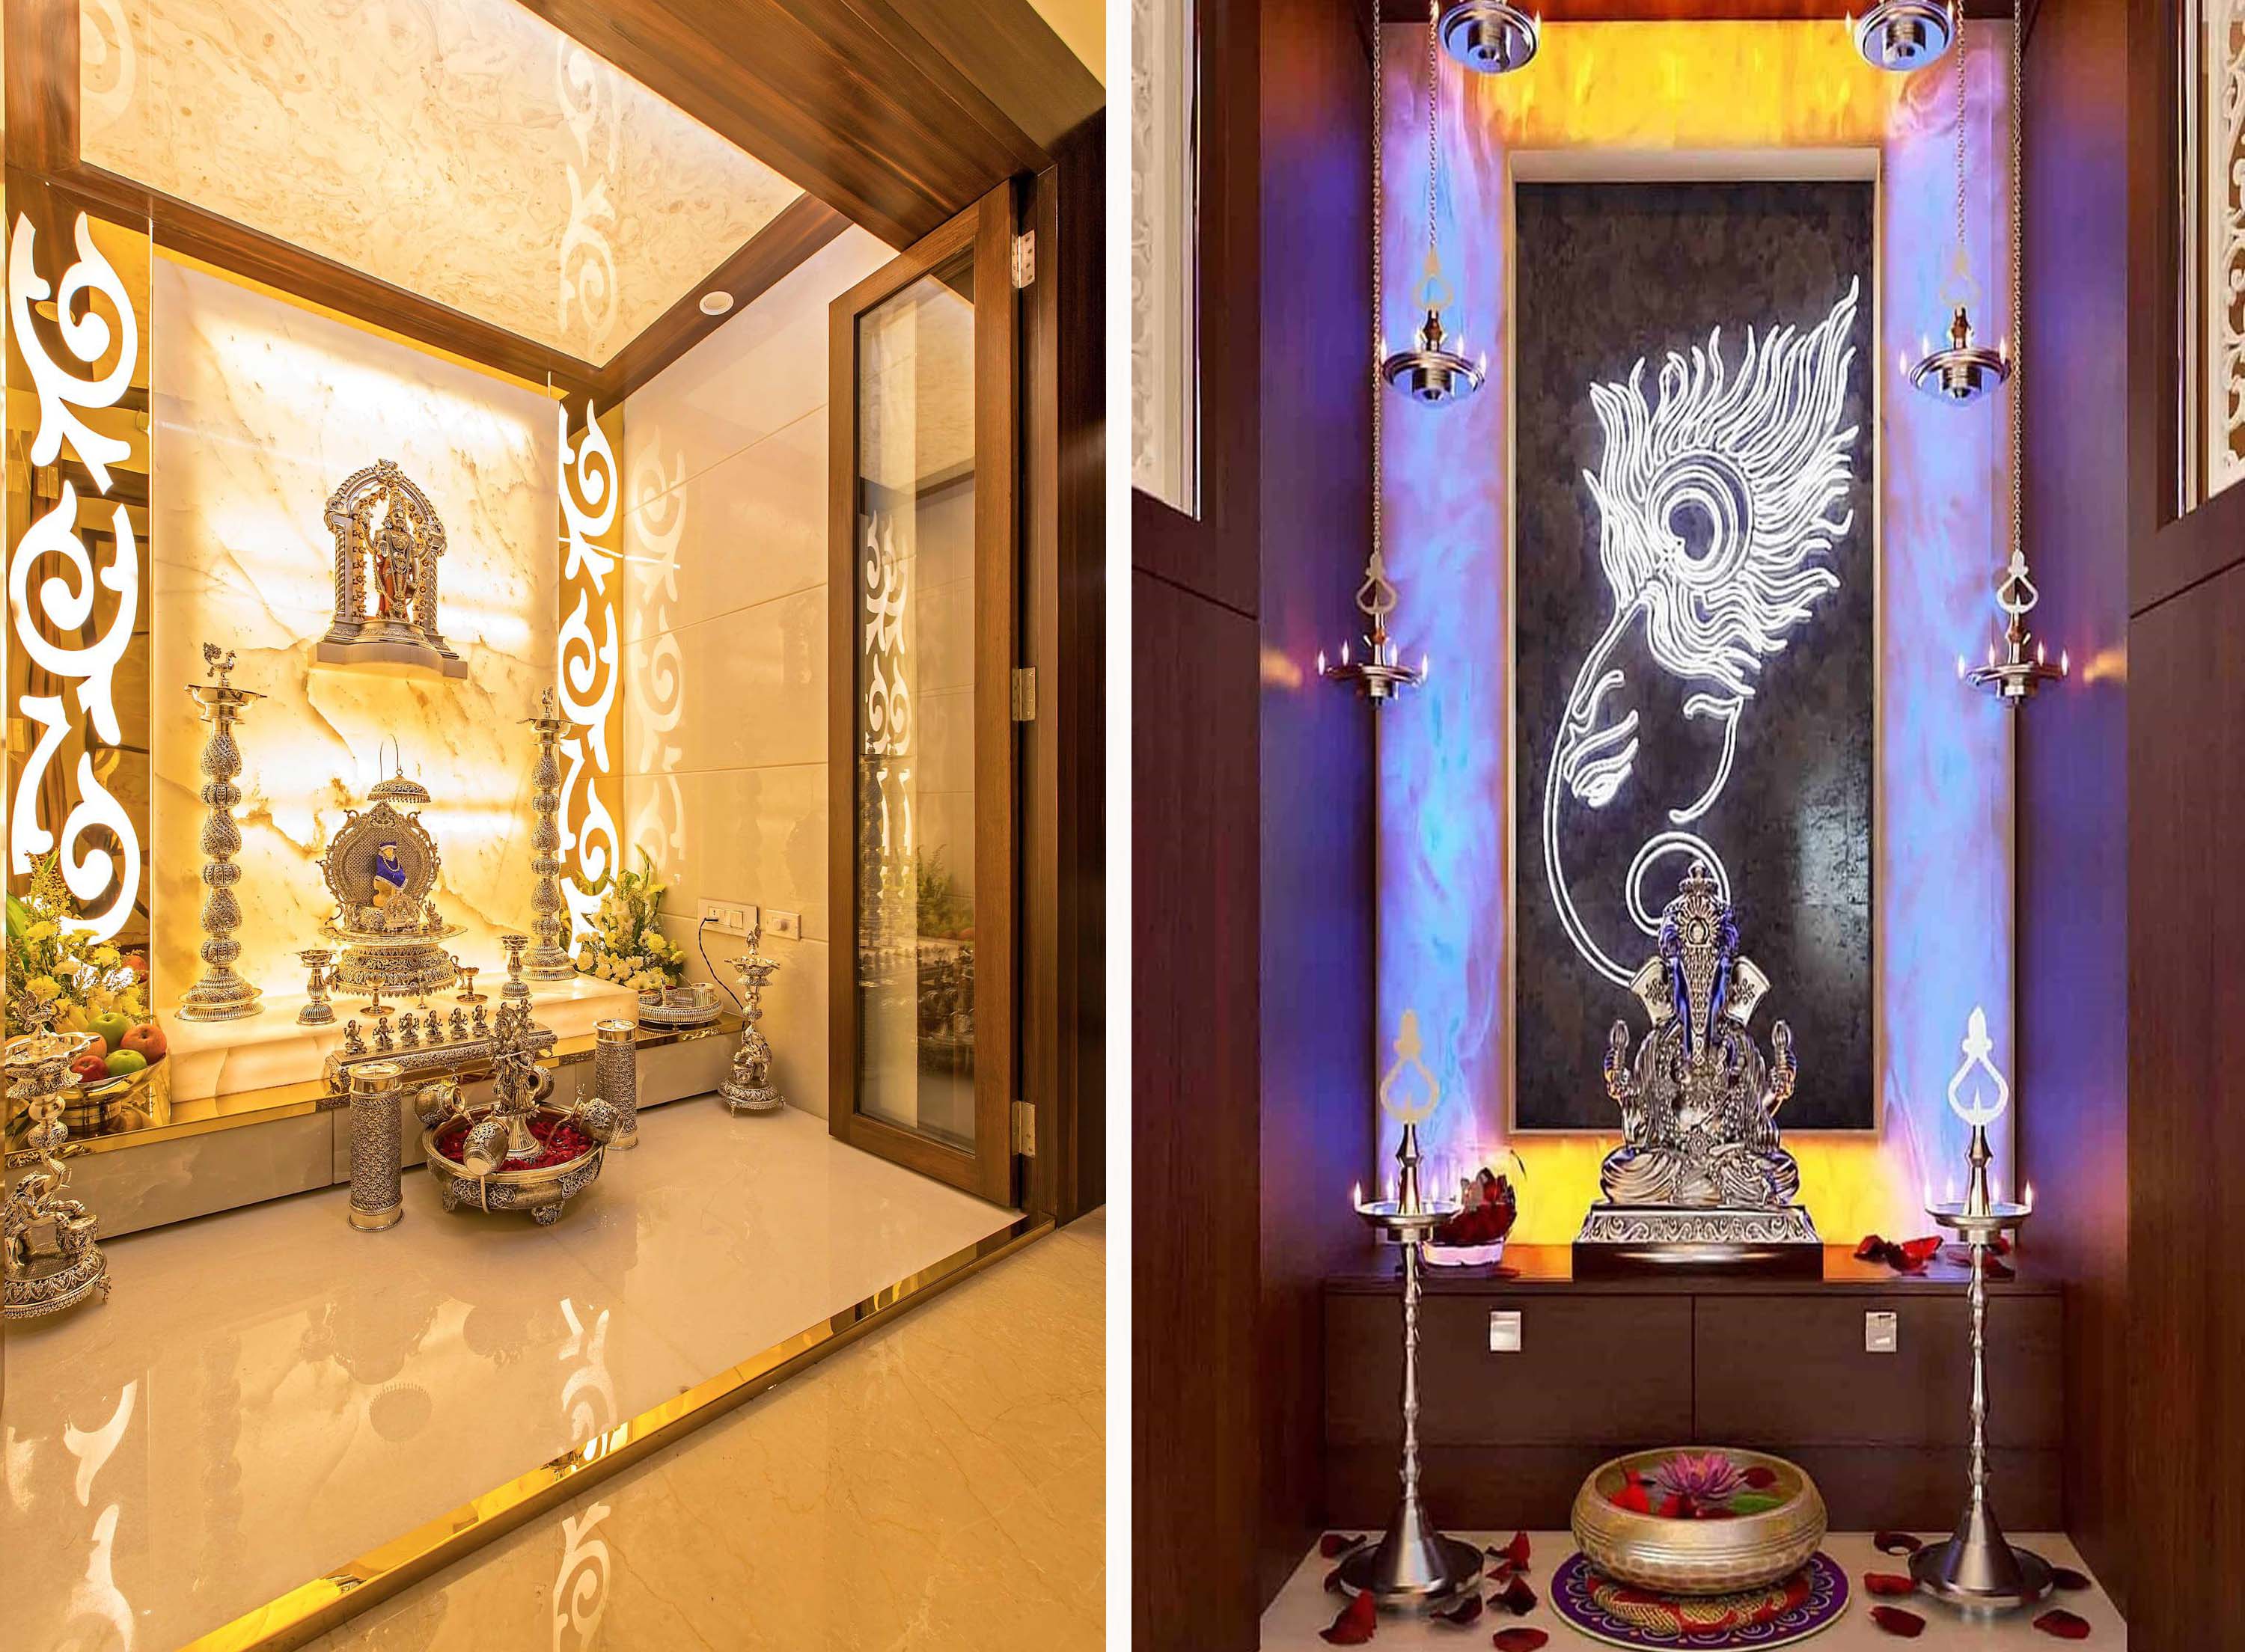 The Pooja Room Design & Decoration Interior Era